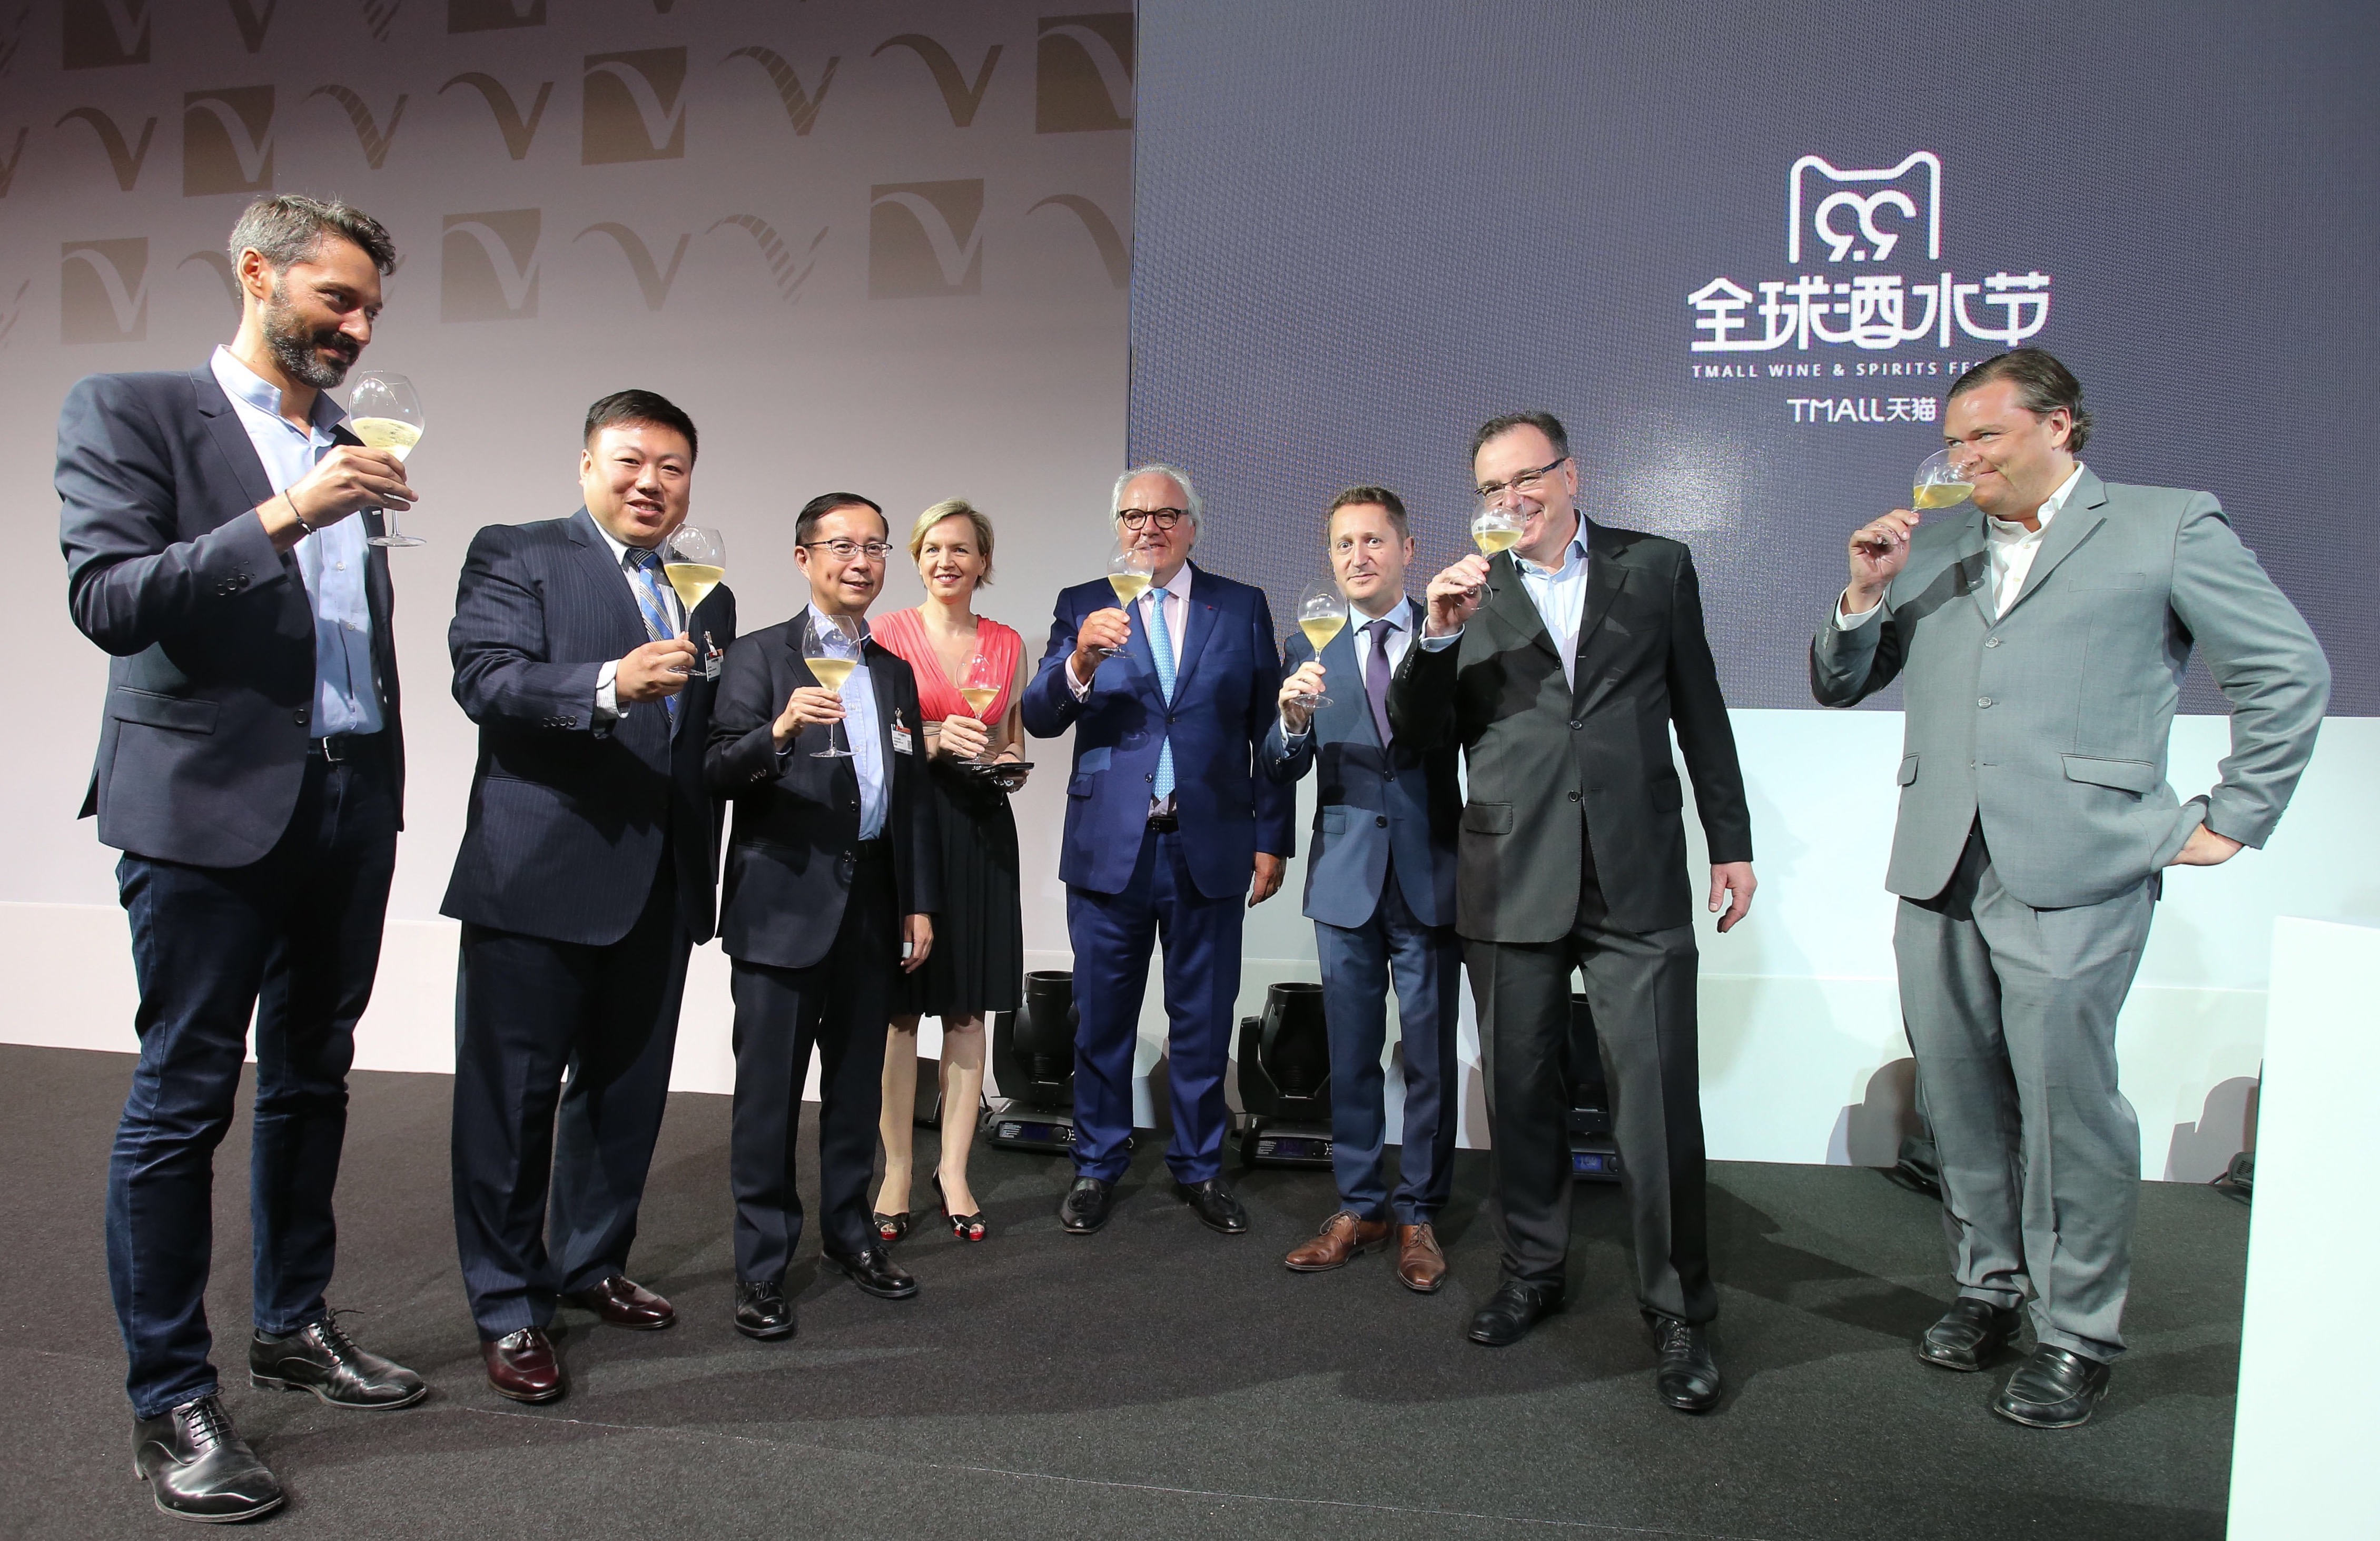 阿里巴巴集团CEO张勇在法国宣布与Vinexpo酒展战略合作并启动99天猫全球酒水节.JPG